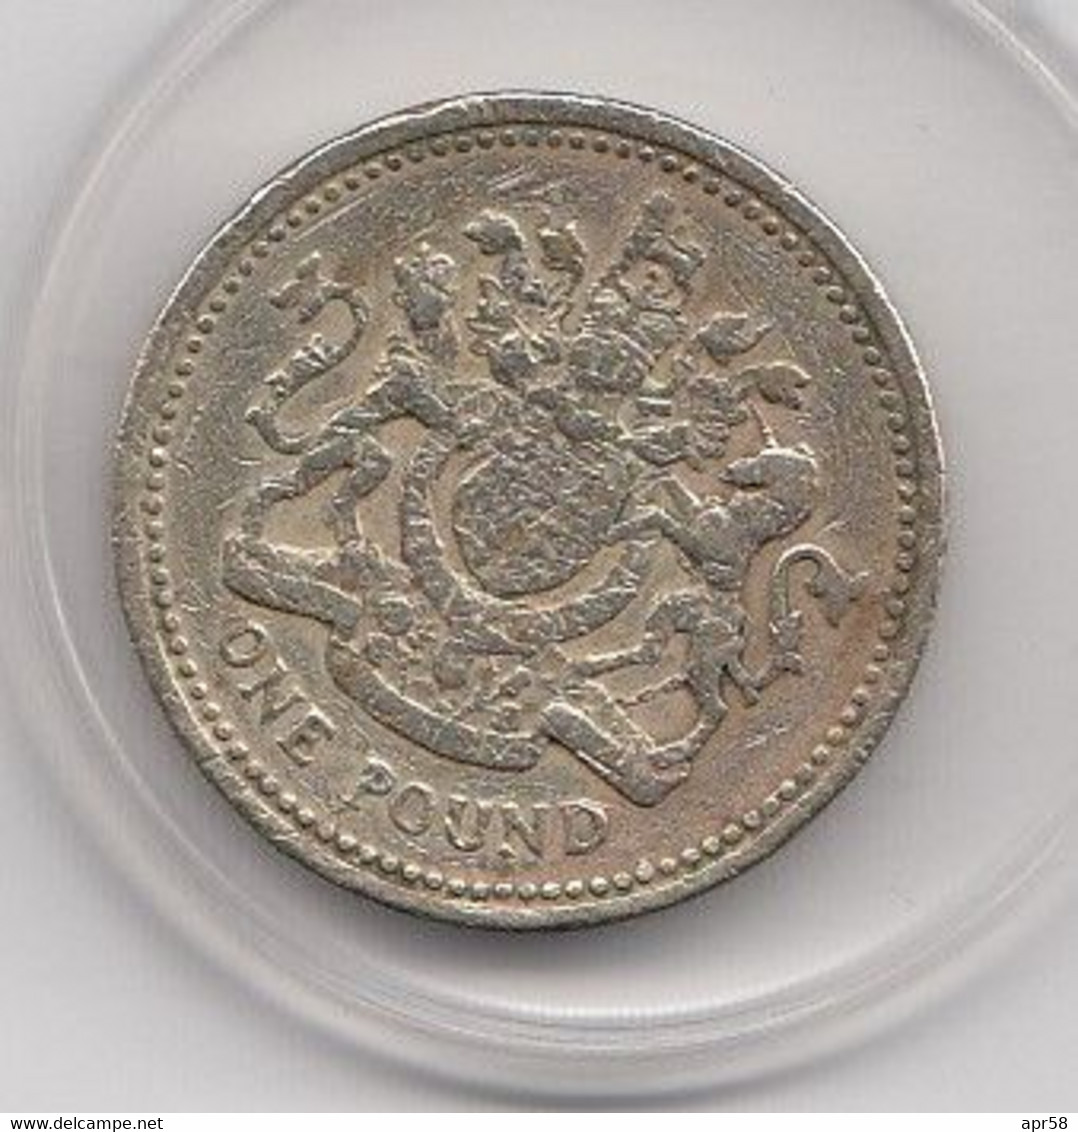 £1 -1983 - 1 Pound